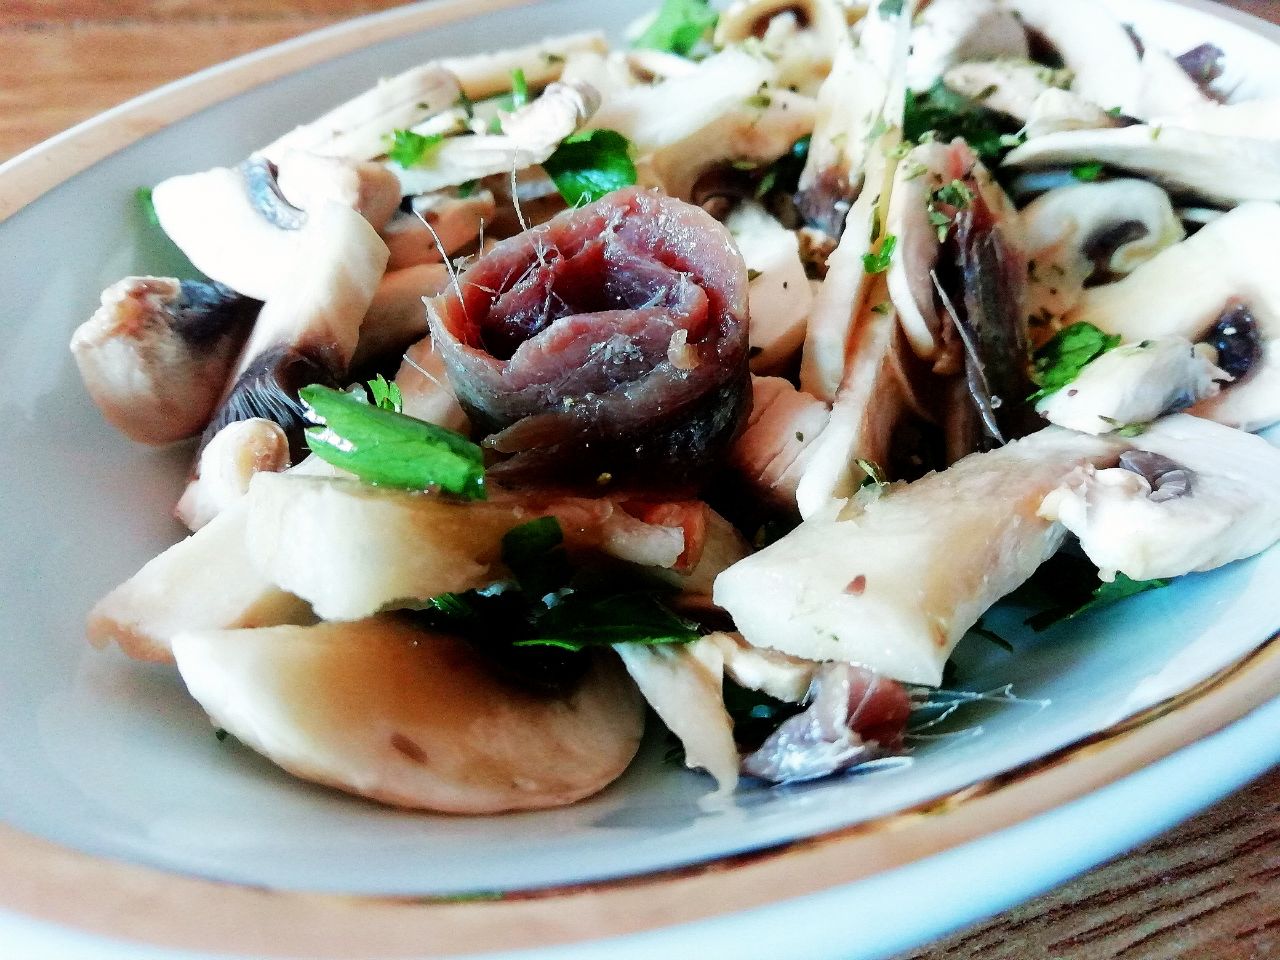 Antipasti economici senza burro e senza formaggio: carpaccio di funghi champignon con filetti di alici olio evo e prezzemolo!